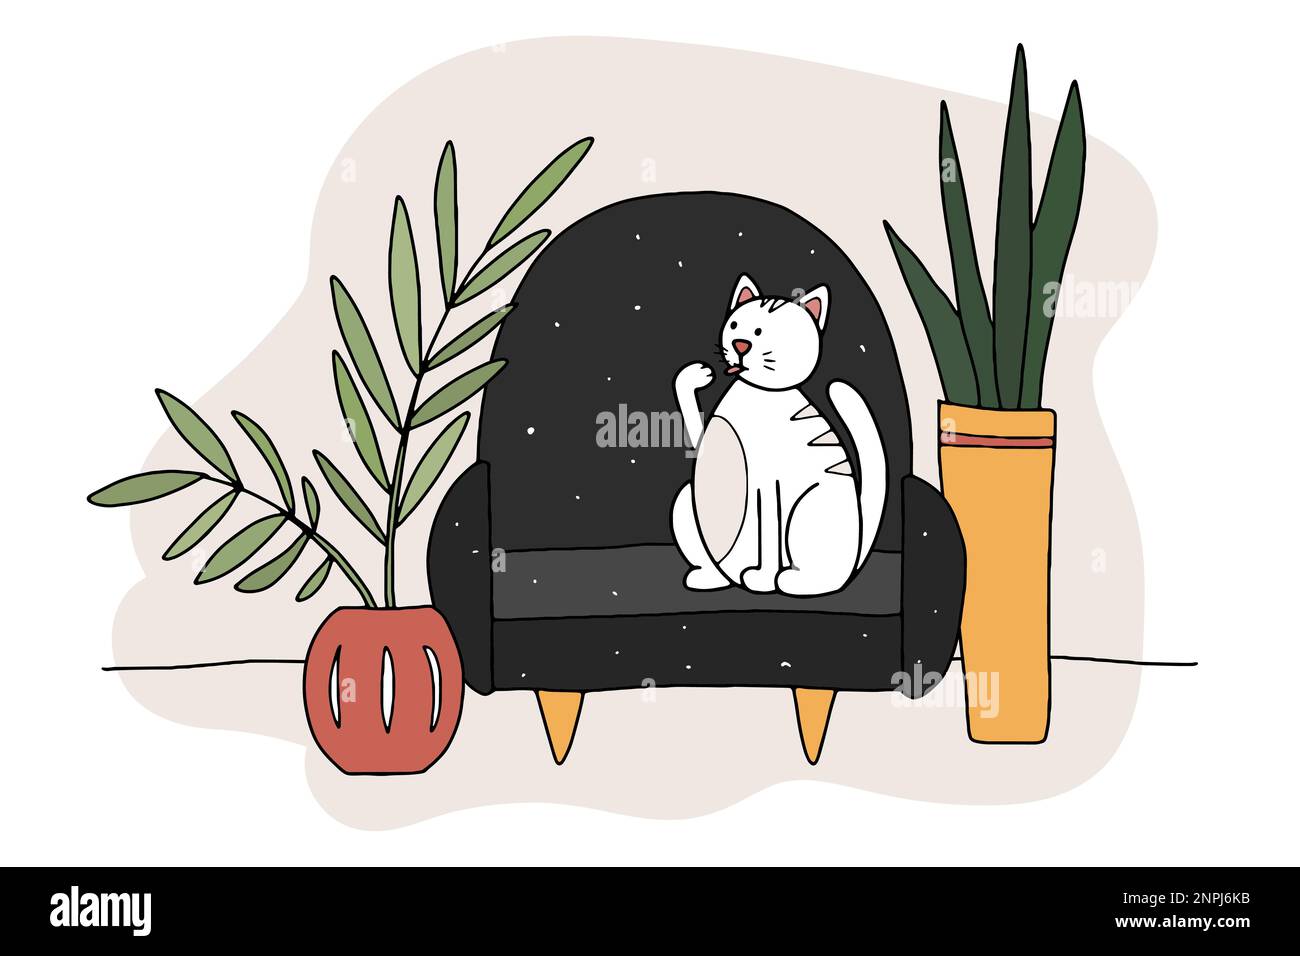 Doodle Cat auf der Couch. Handgezogenes Haustier in einer gemütlichen Inneneinrichtung mit Pflanzen in einem Topf. Weißes gestreiftes Tier leckt sich zu Hause die Pfote. Das Leinenkätzchen wäscht sich Stock Vektor